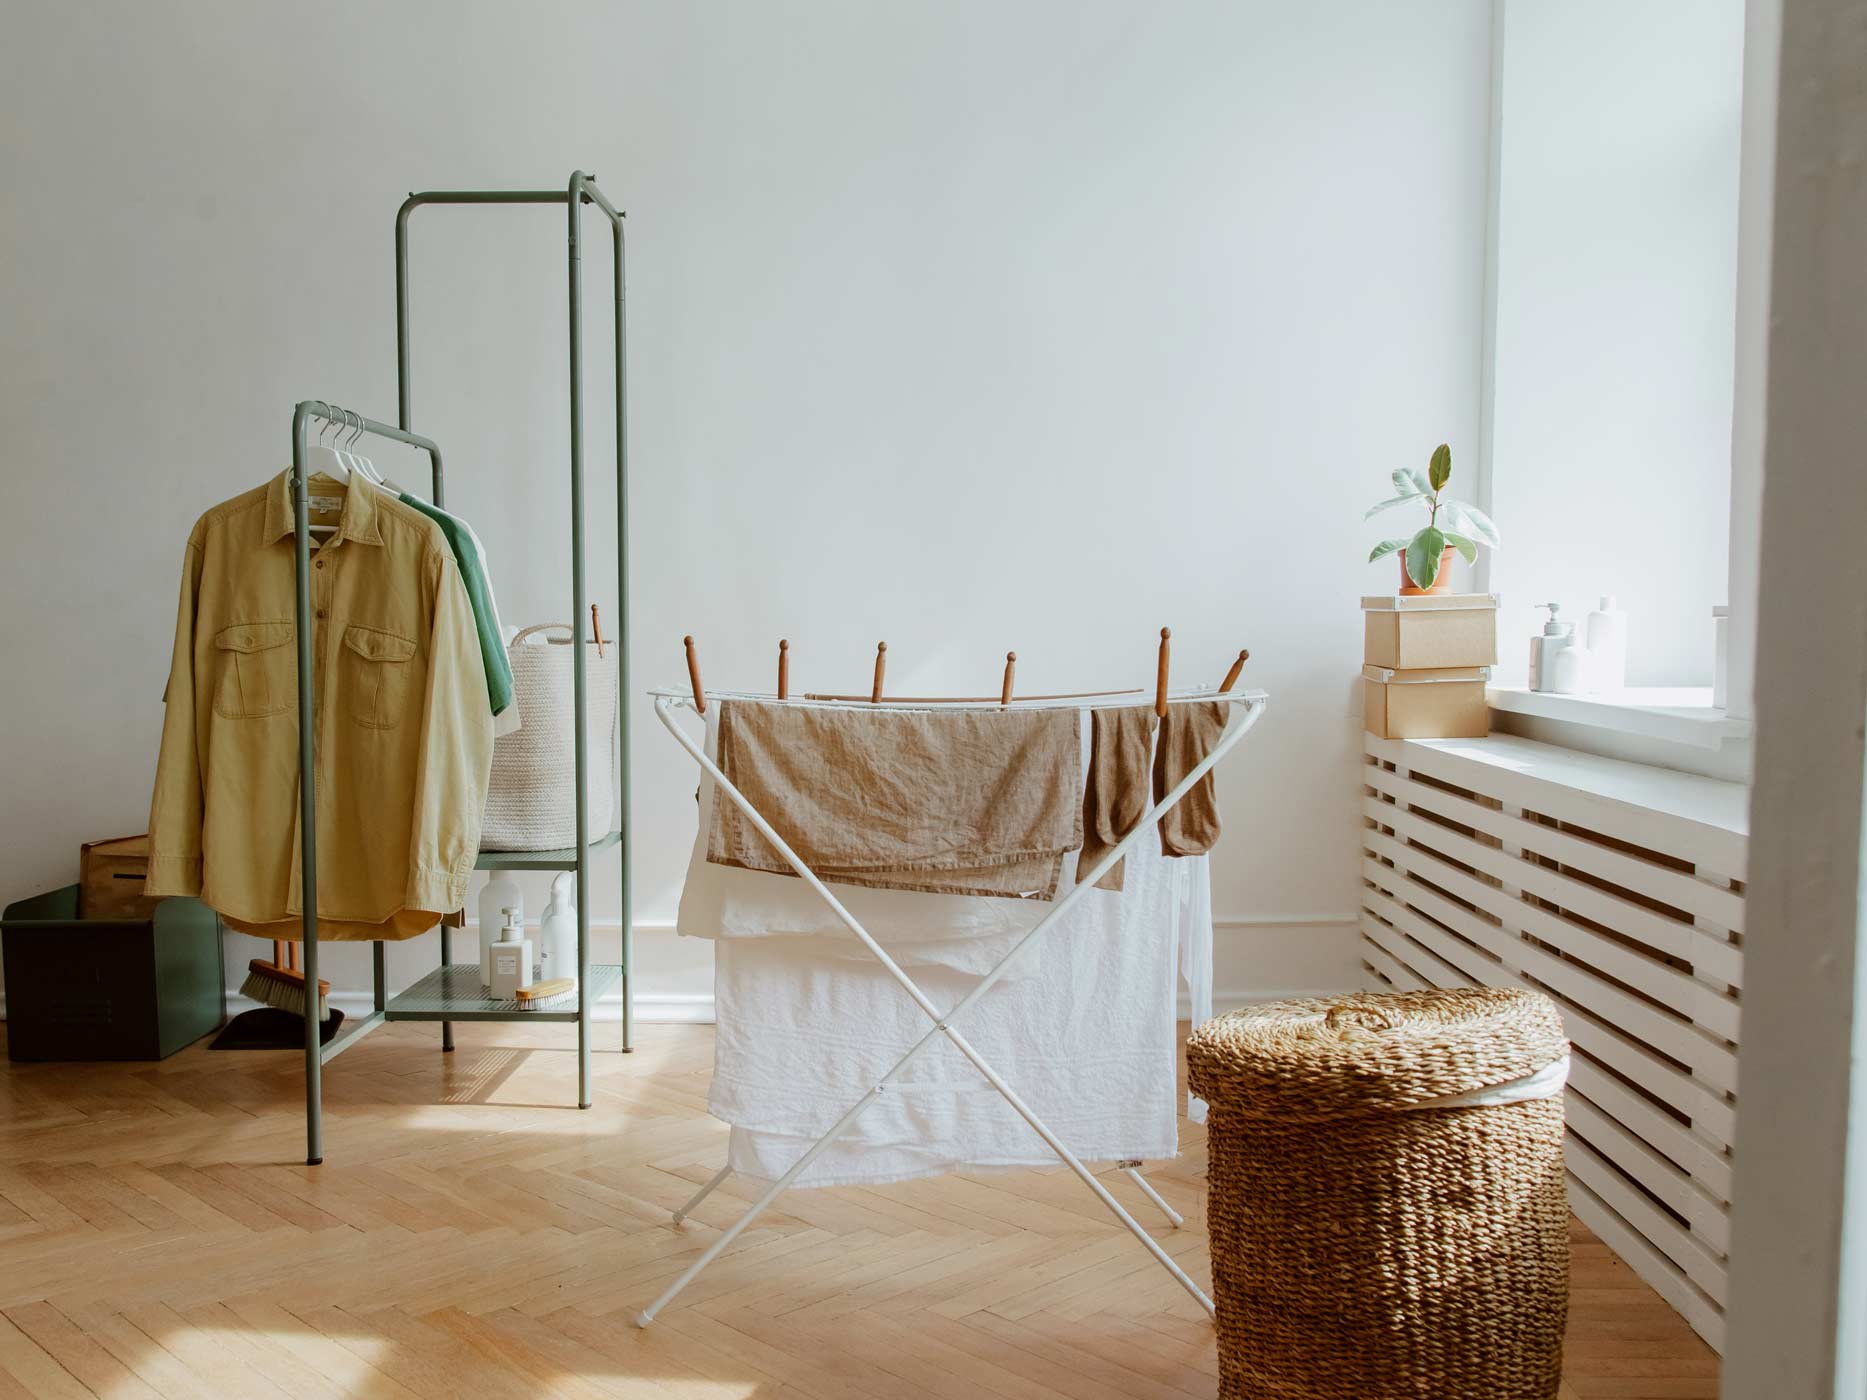 Hemden hängen rechts im Zimmer auf Kleiderbügeln und in der Mitte steht ein Wäscheständer mit Handtüchern, die mit Wäscheklammern befestigt sind